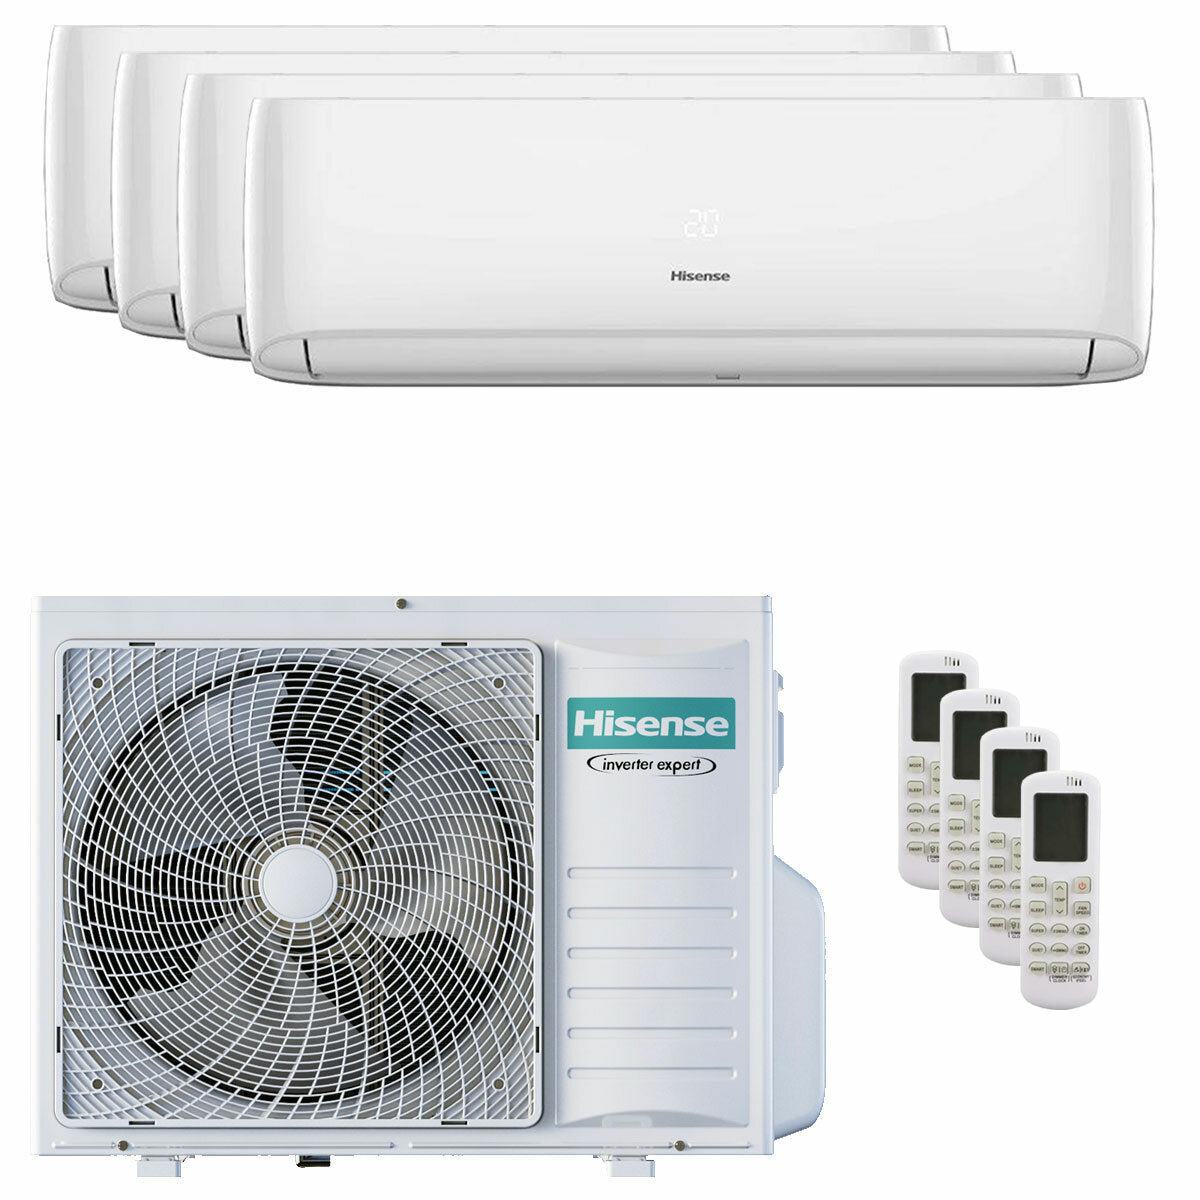 Hisense Hi-Comfort quadri split air conditioner 7000+9000+9000+9000 BTU inverter A++ wifi outdoor unit 8 kW